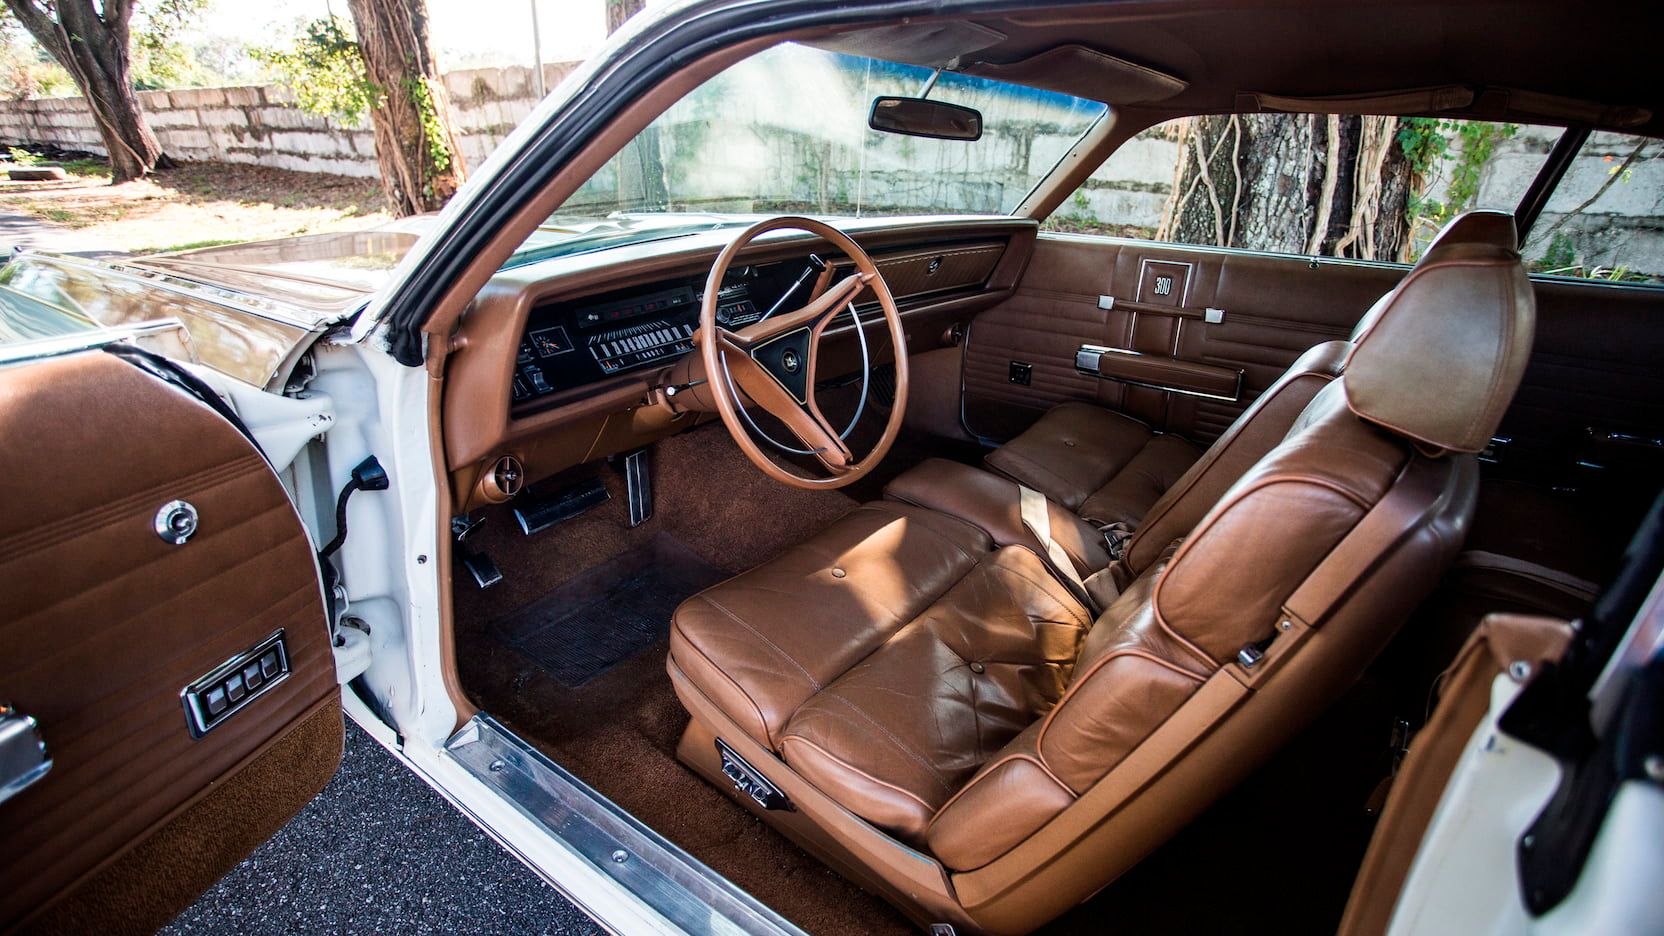 A parked 1970 Chrysler Hurst 300 